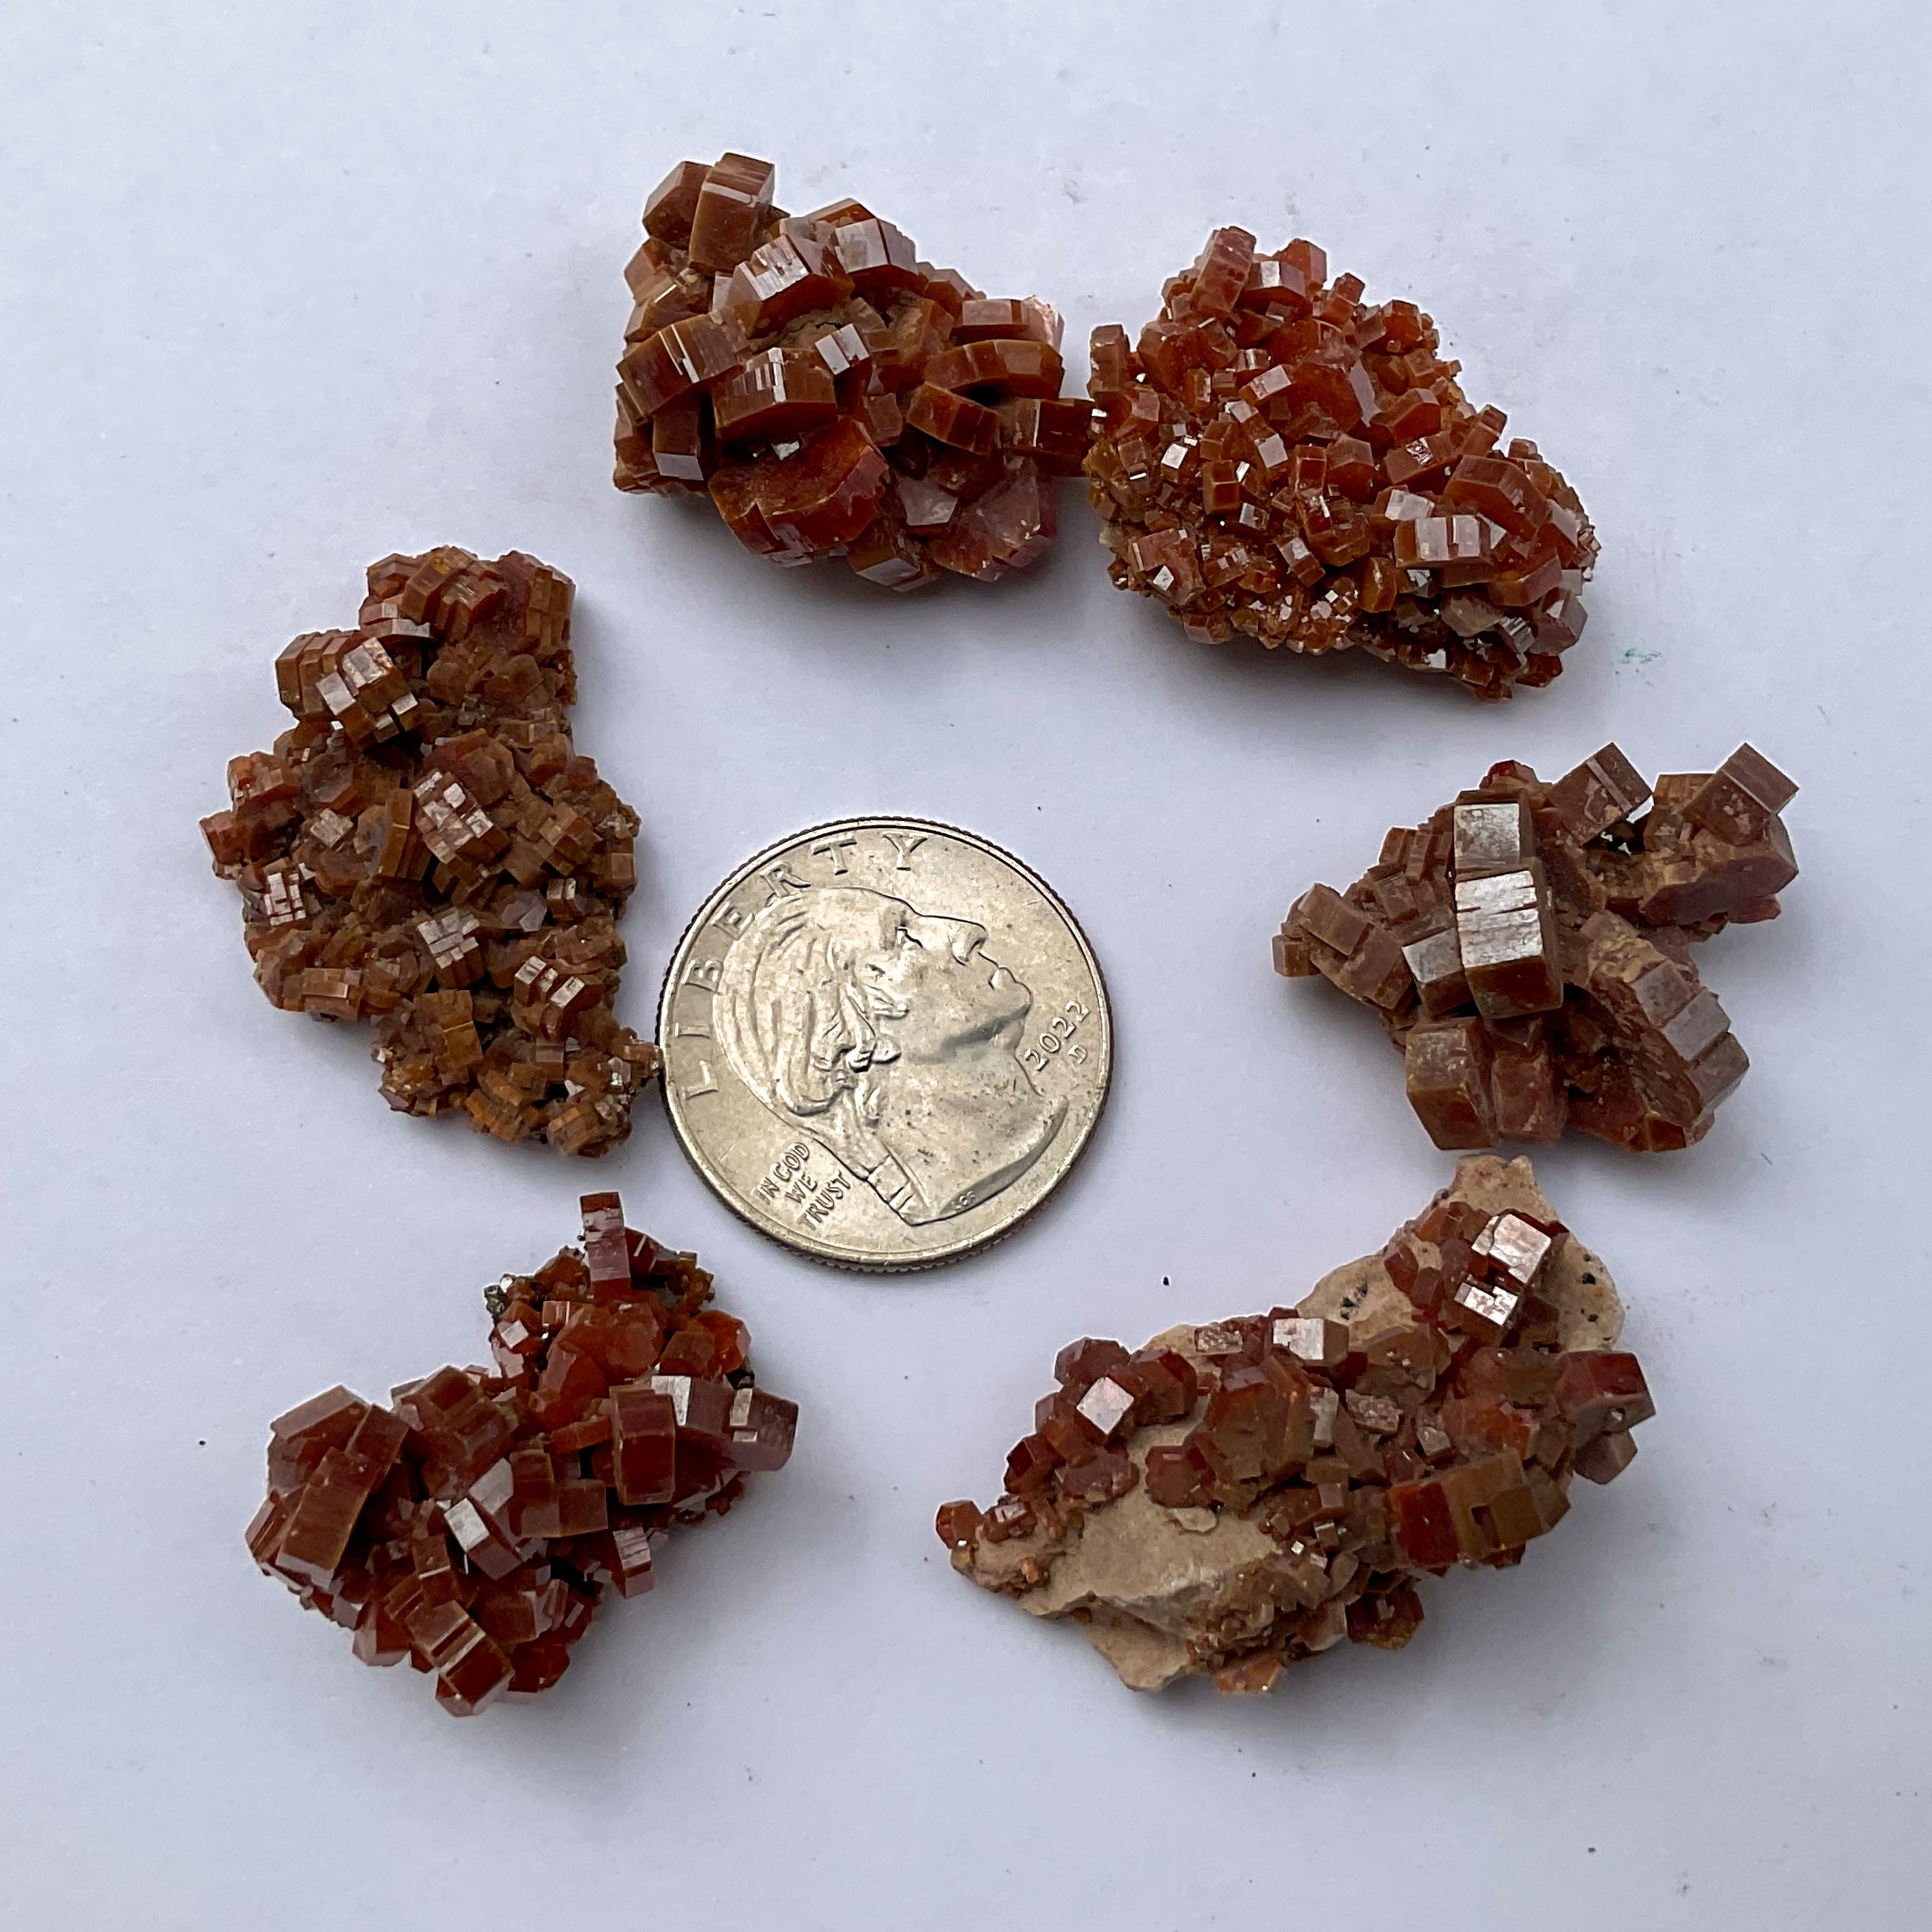 Crystal Clusters in Vanadinite